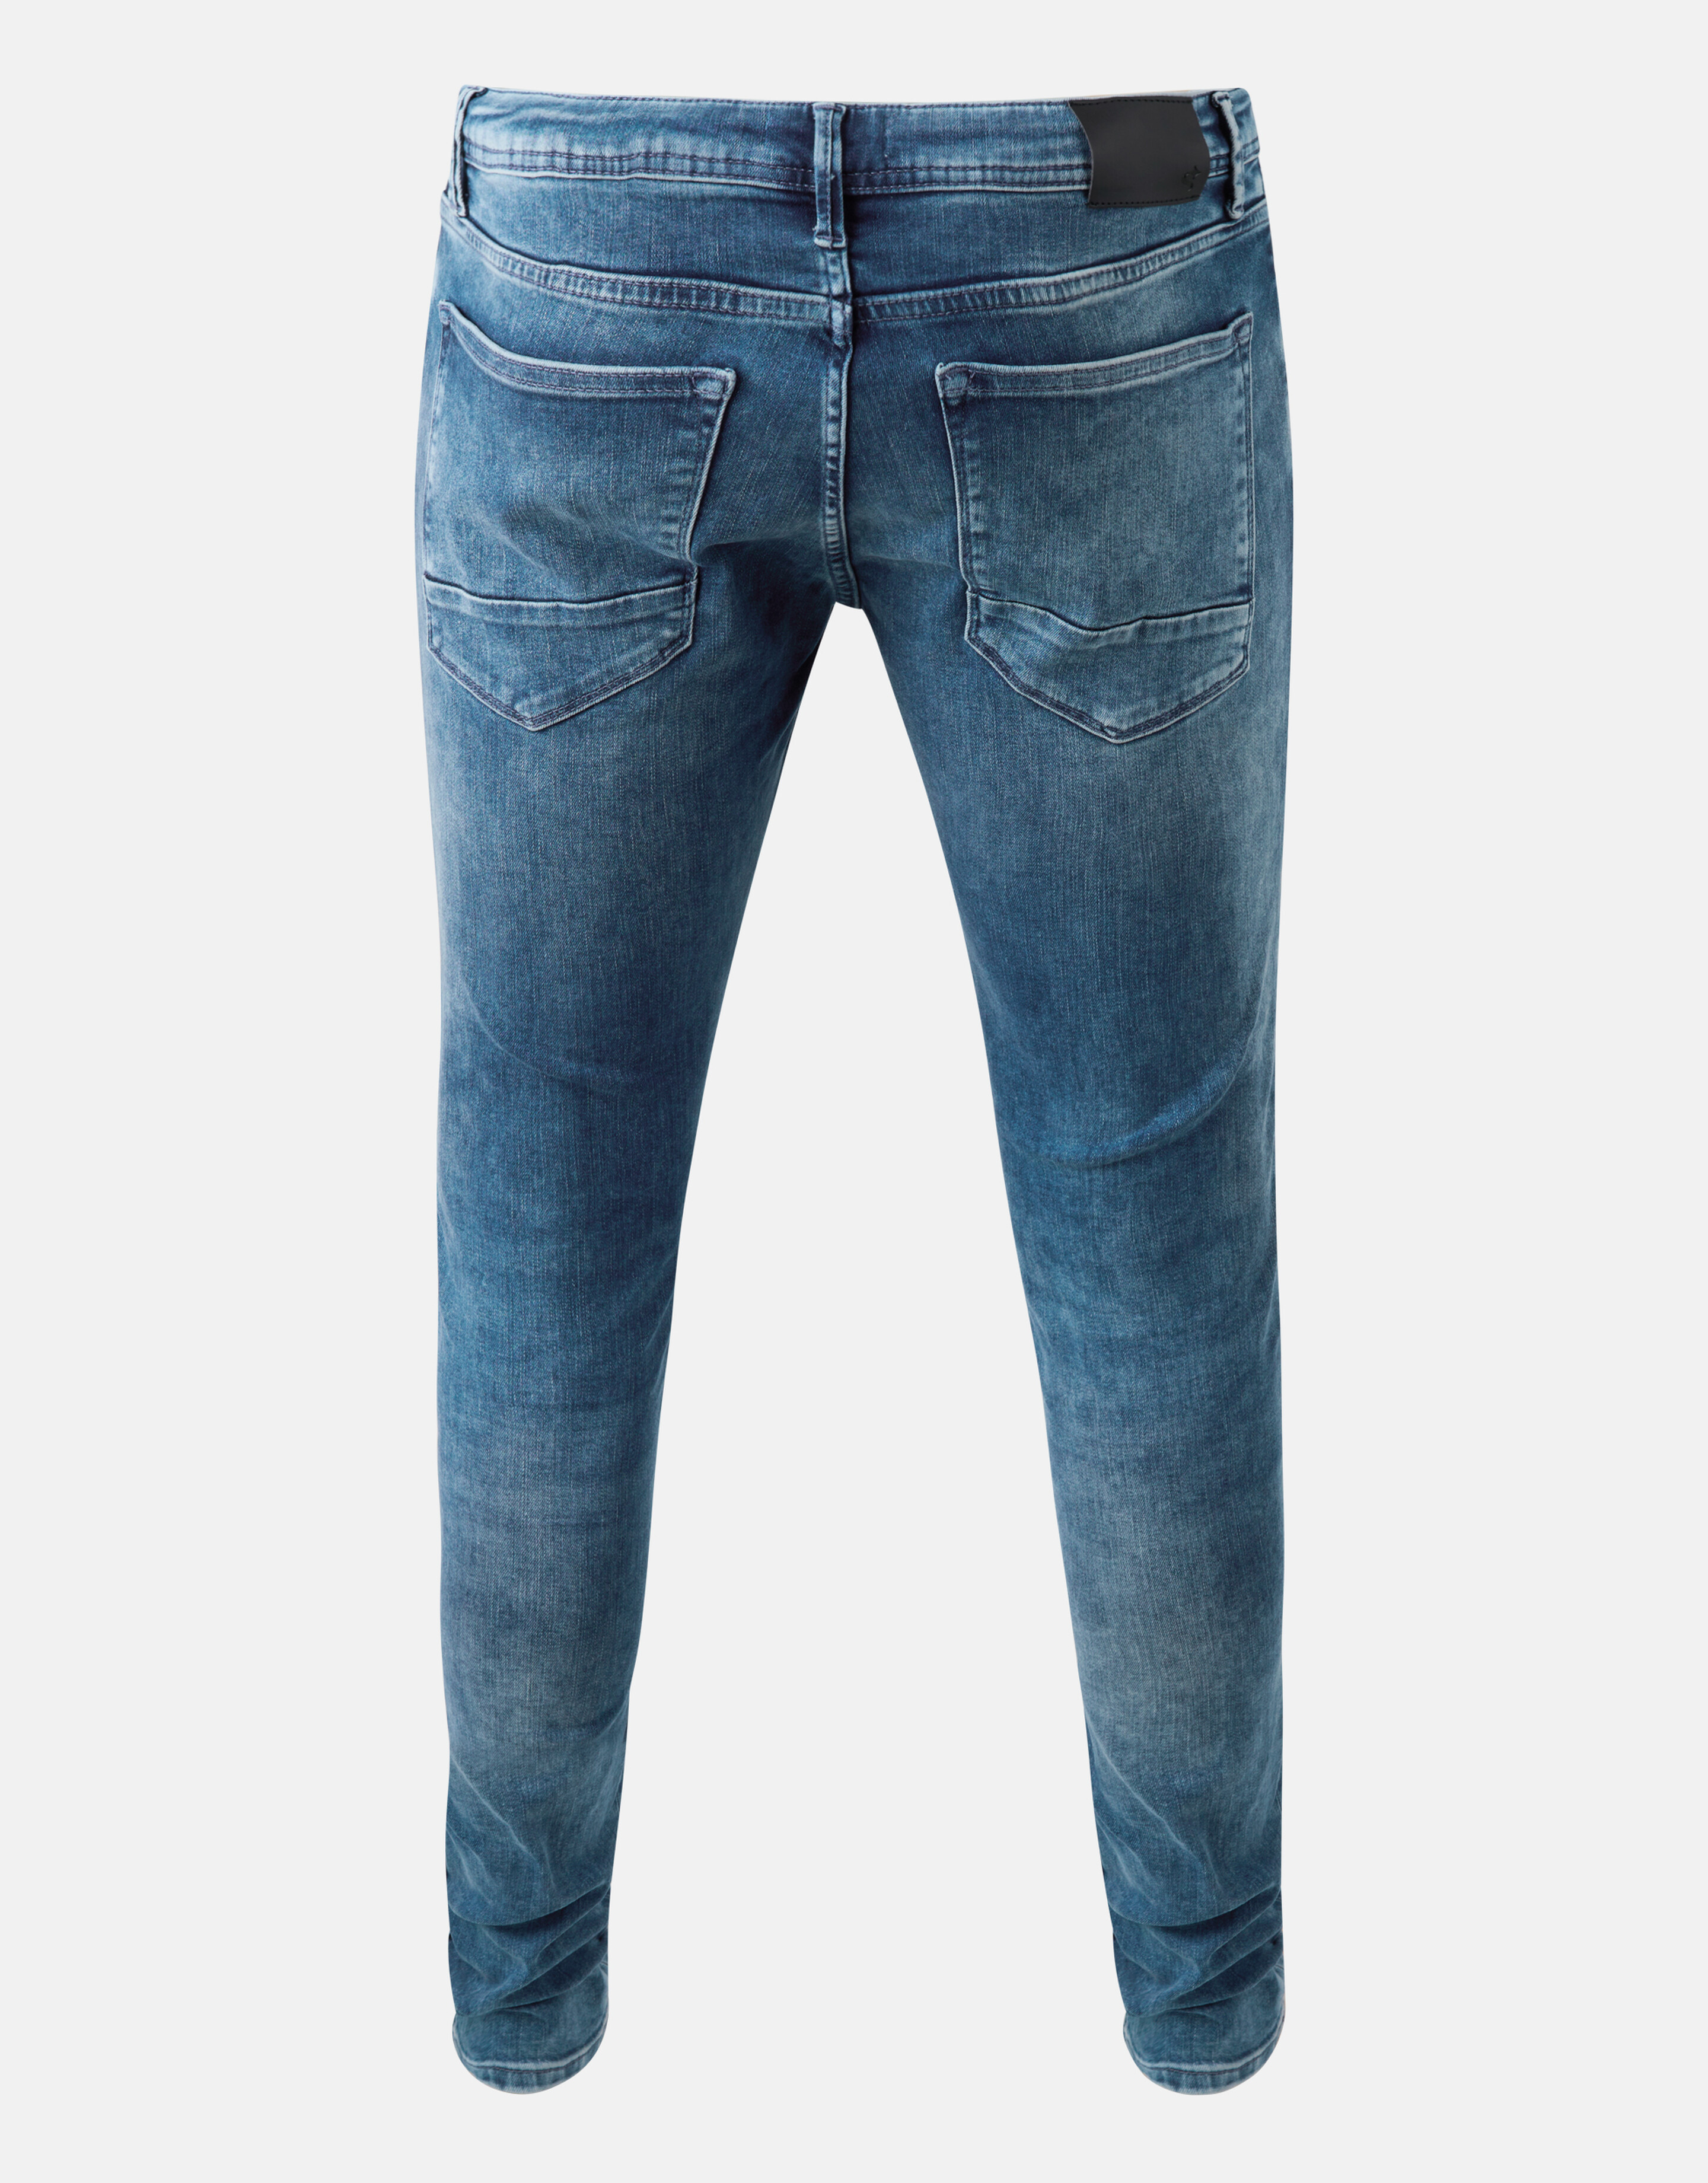 Skinny Jeans Jack Mediumstone L34 Refill